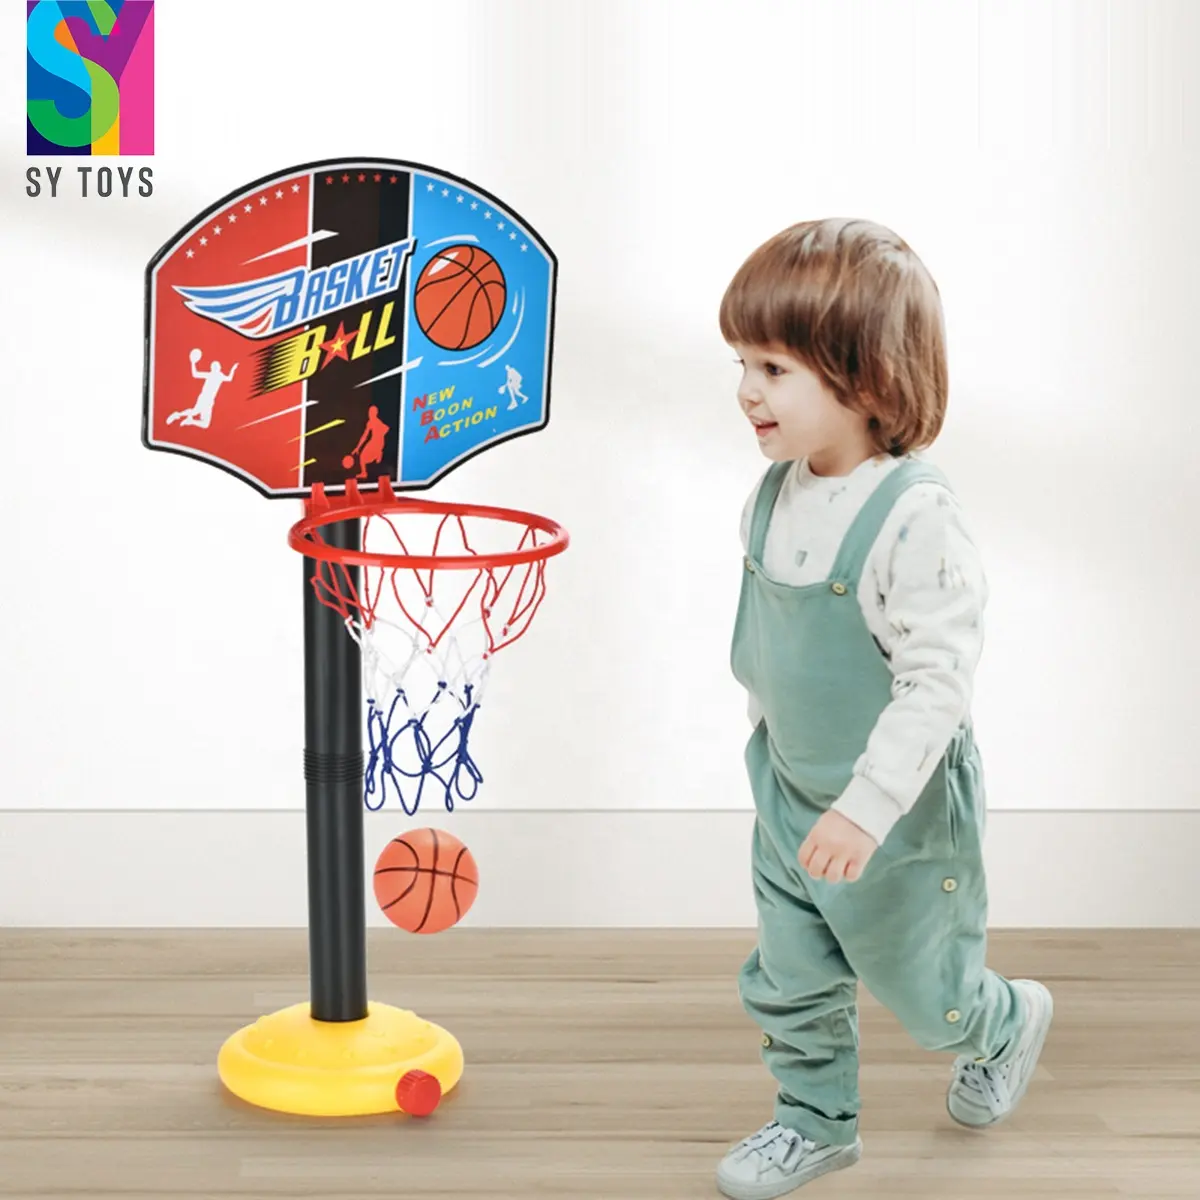 SY enfants support de basket-ball jeu jouets support de levage gonflable basket-ball garçon sport balle cadre jouets